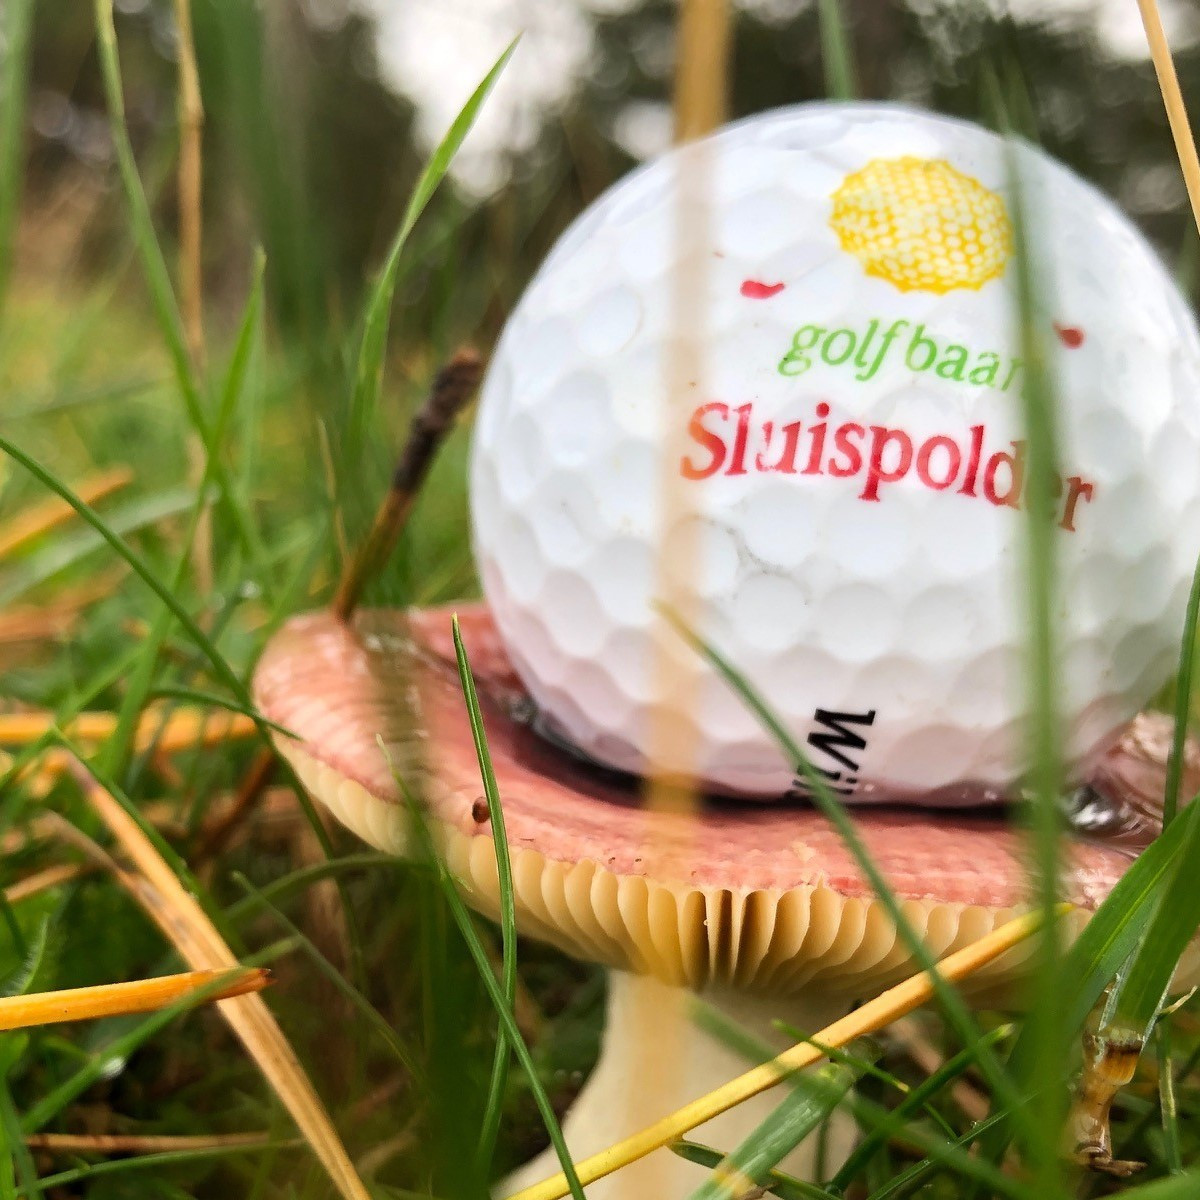 herfst paddenstoel golfbal sluispolder vk.jpg